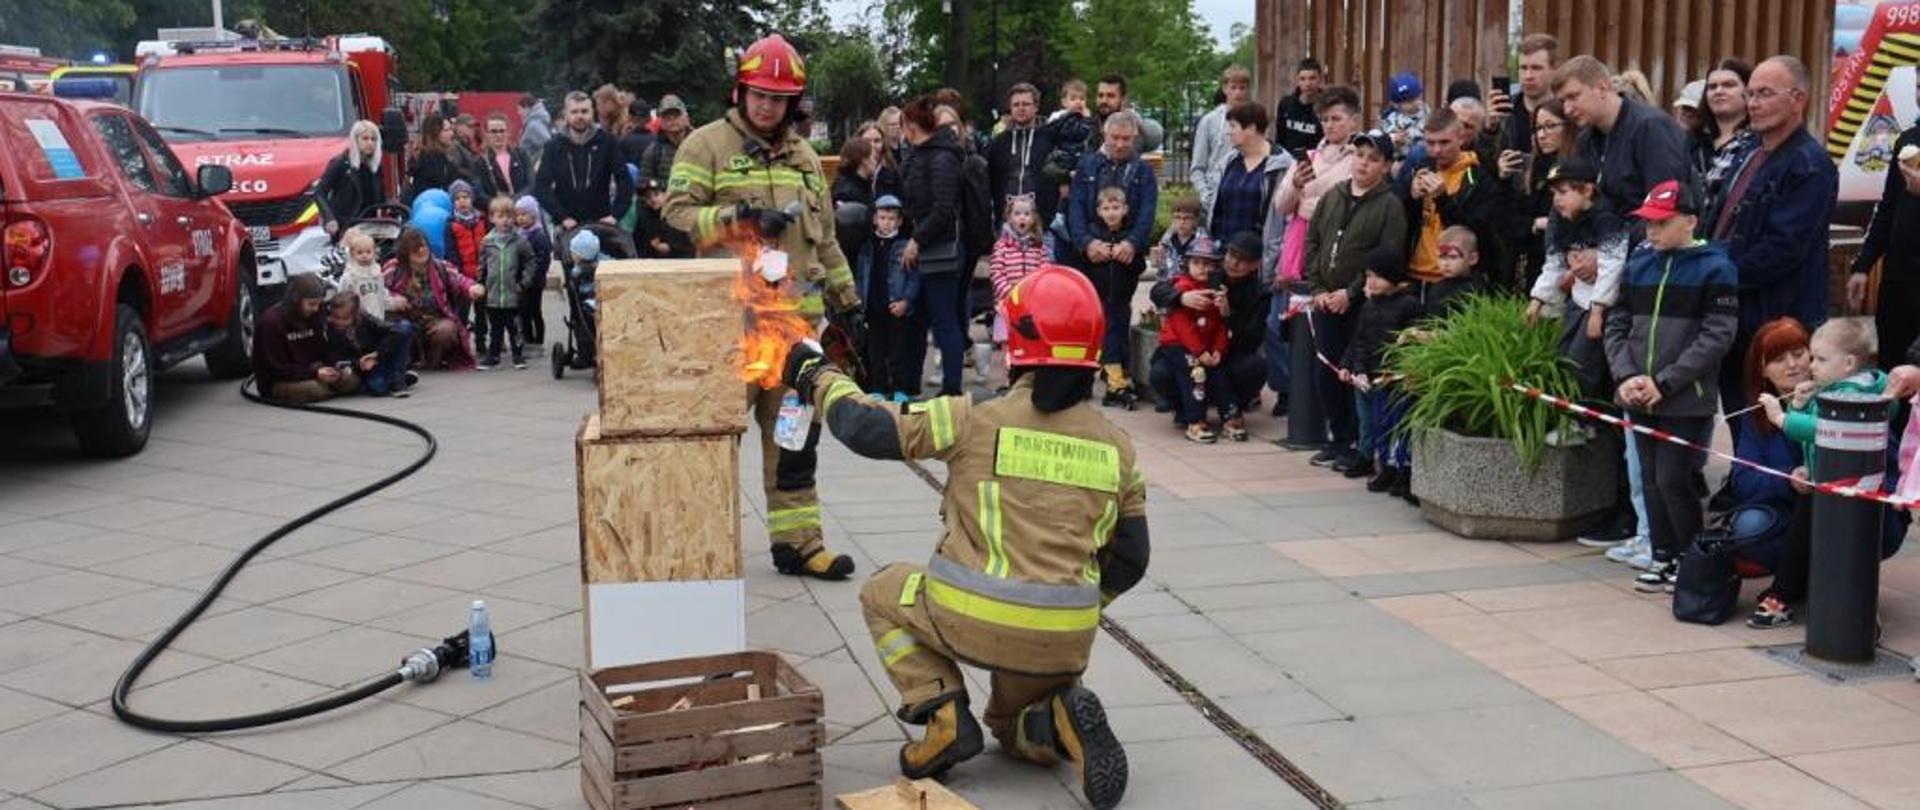 Zdjęcie wykonane na Placu Jagiellońskim w Radomiu podczas rodzinnego pikniku strażackiego zorganizowanego po zakończeniu obchodów powiatowego dnia strażaka. Na zdjęciu widać dwóch strażaków ubranych w hełmy oraz specjalistyczną odzież ochronną. Pomiędzy strażakami znajduje się konstrukcja, która zostanie podpalona w formie pokazu. Dookoła strażaków znajdują się ludzie, osoby odwiedzające piknik obserwujące pokaz. 